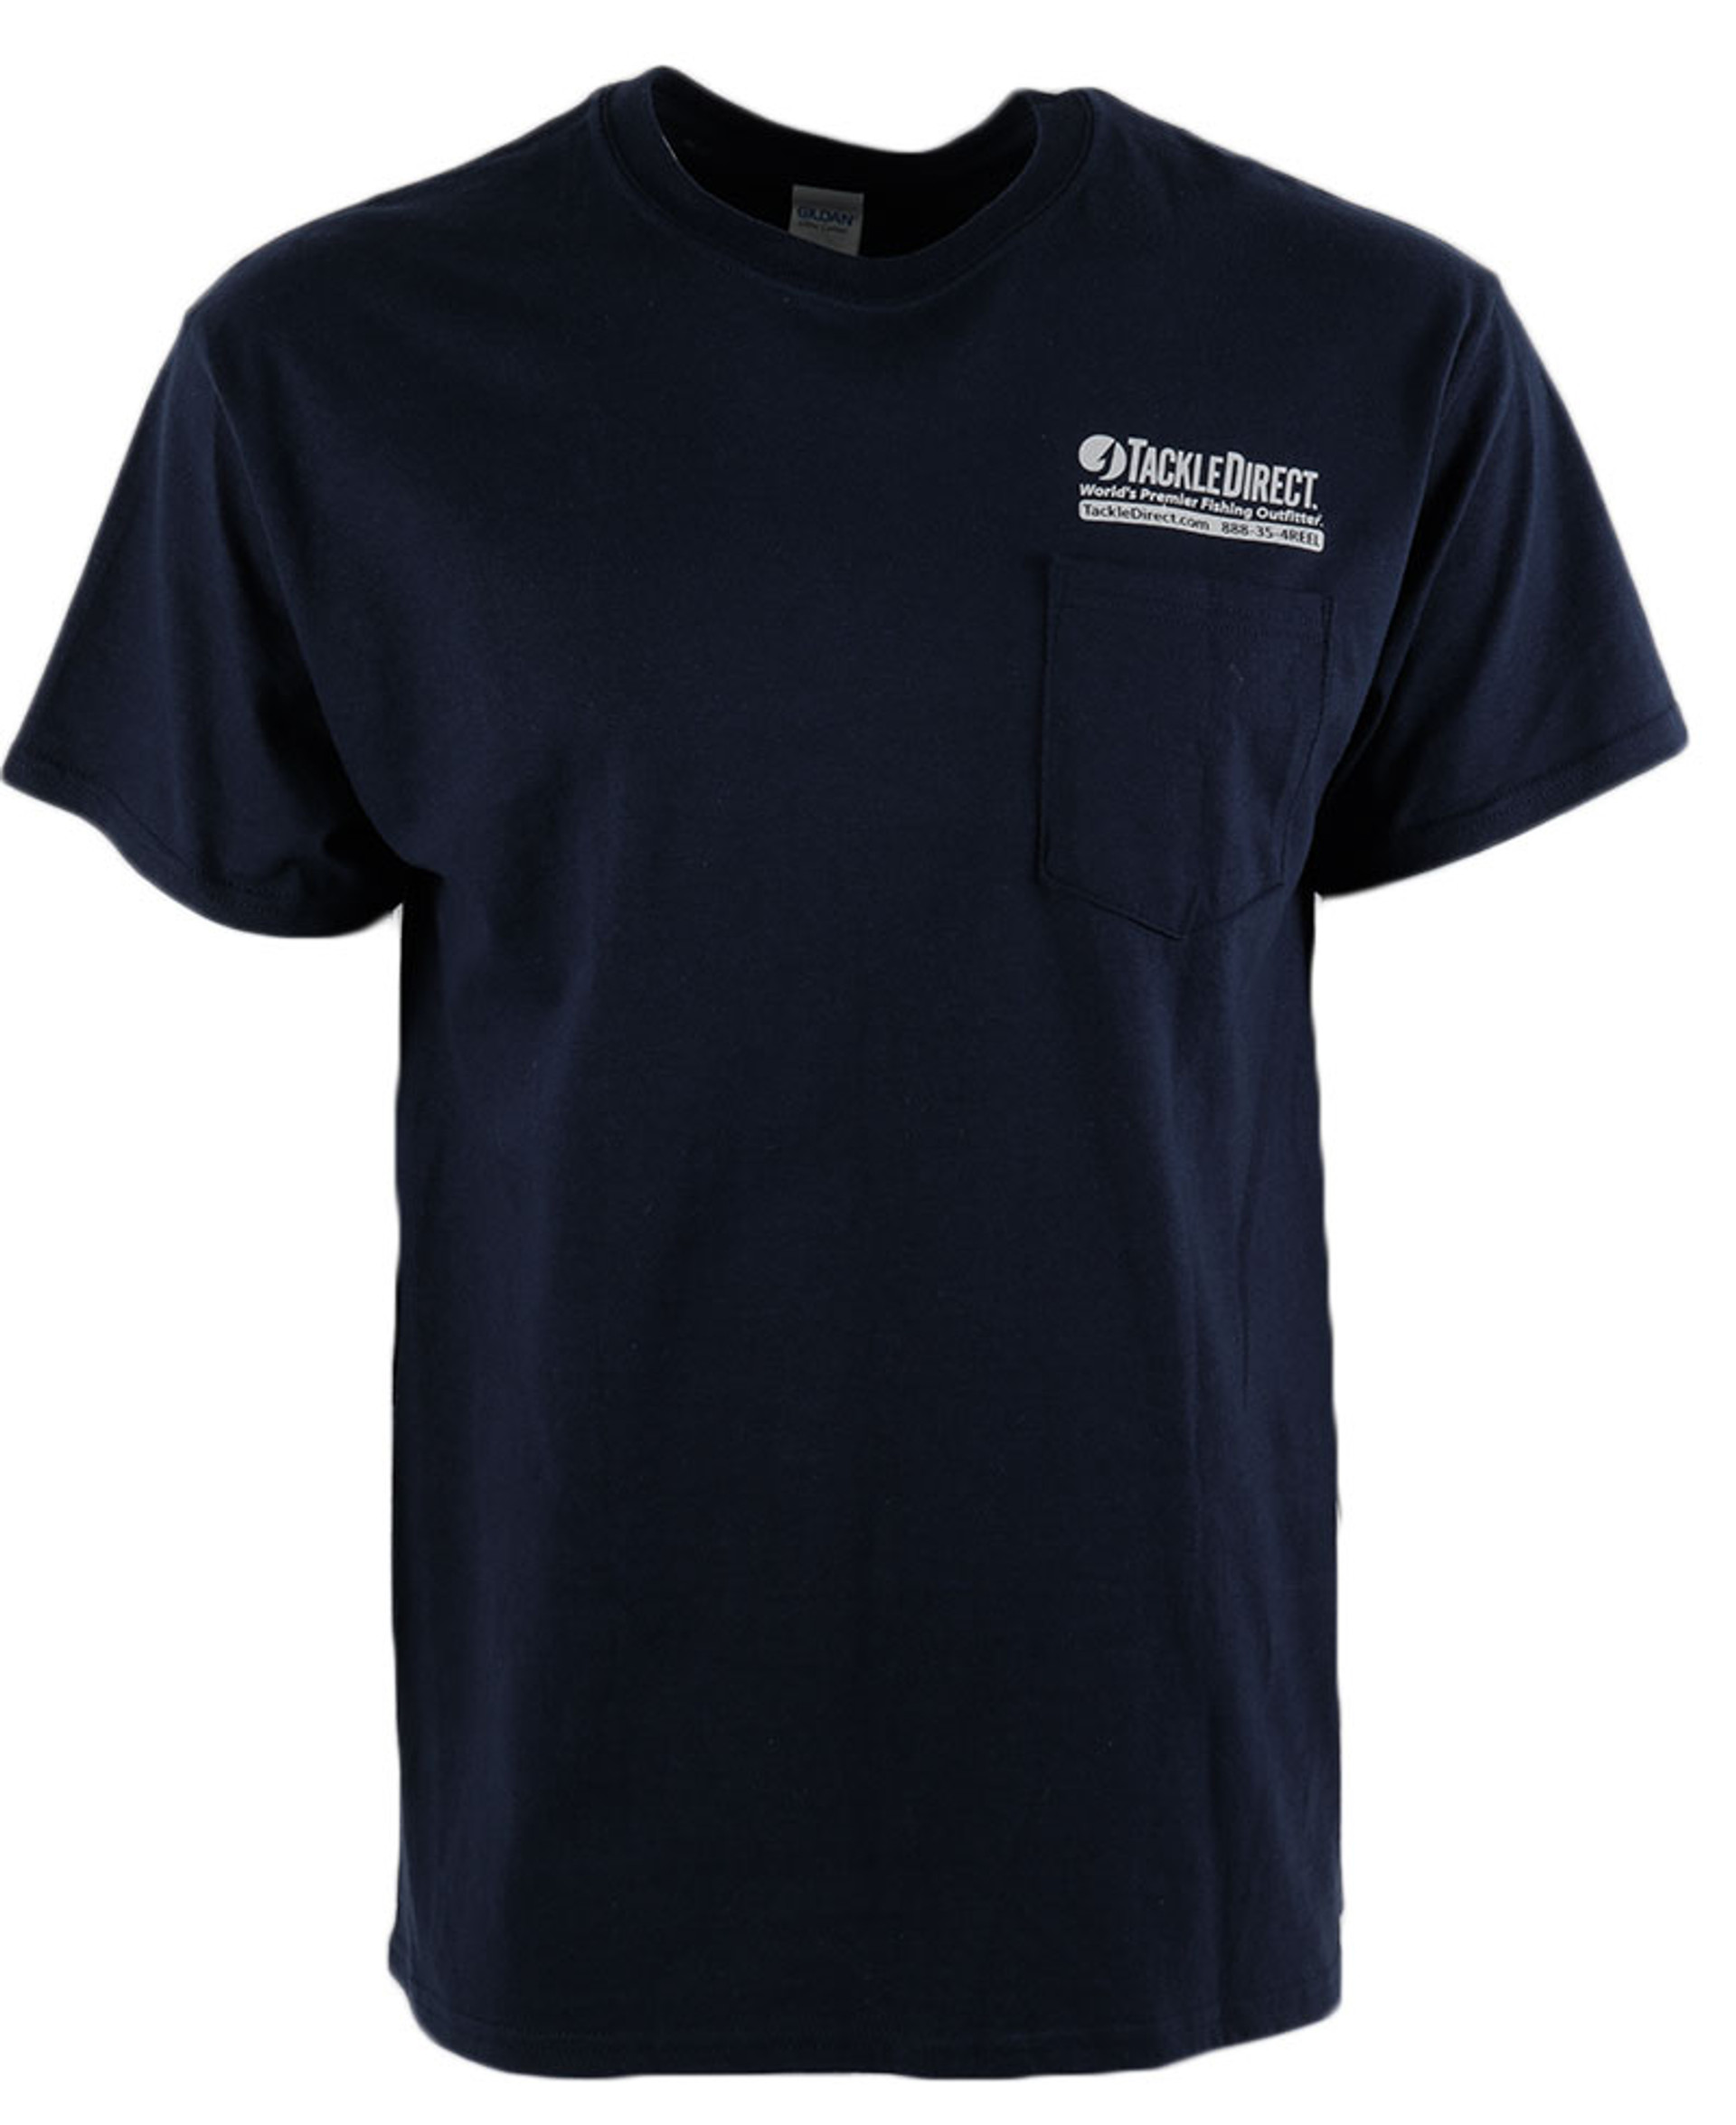 TackleDirect Apparel - Logo T-Shirts,TackleDirect Logo T-Shirts